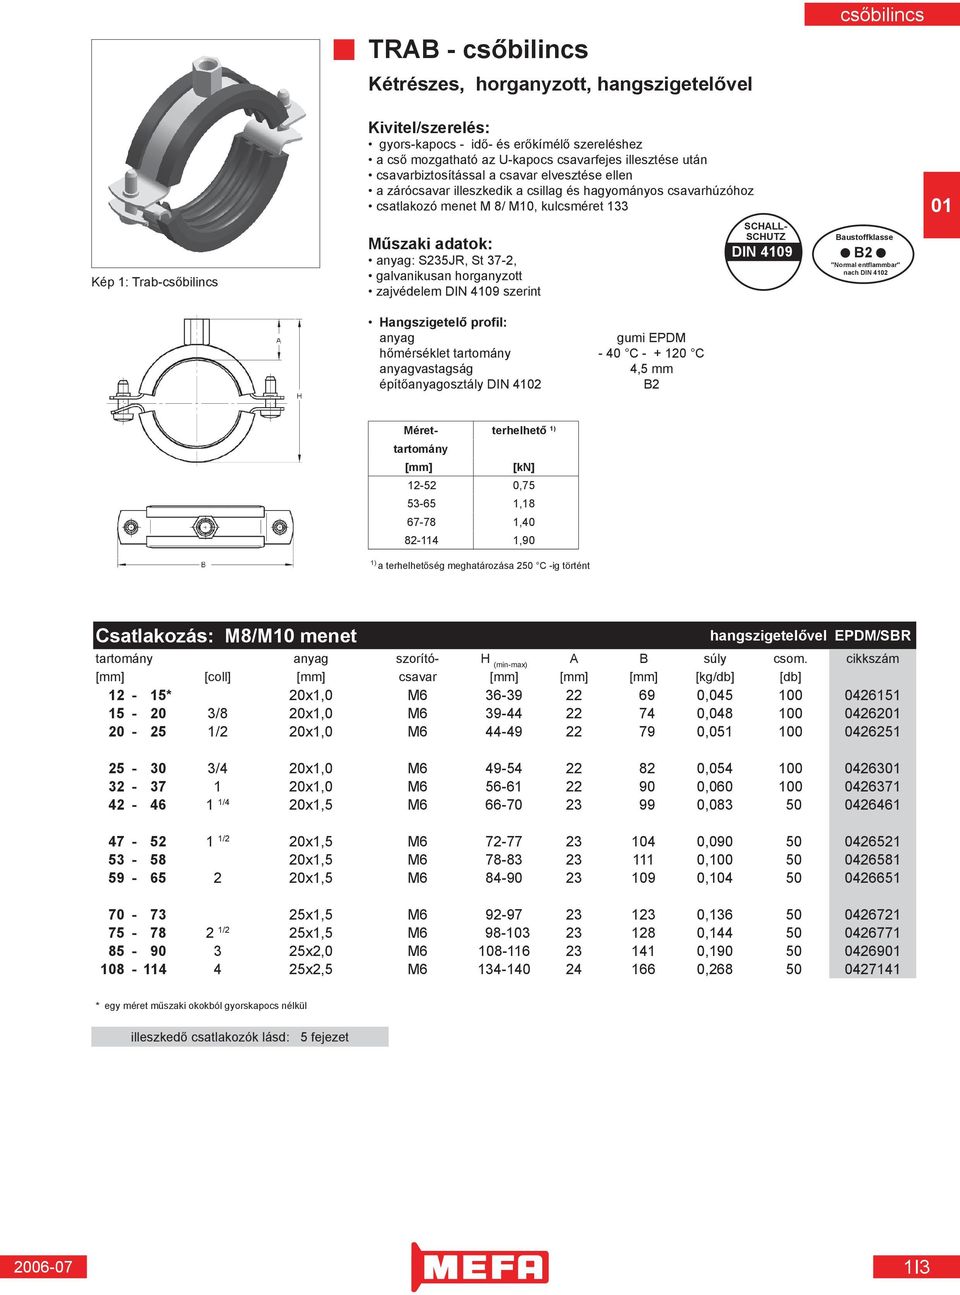 SCHALL- SCHUTZ DIN 4109 Baustoffklasse "Normal entflammbar" nach DIN 4102 Hangszigetelő profil: anyag gumi EPDM hőmérséklet tartomány - 40 C - + 120 C anyagvastagság 4,5 mm építőanyagosztály DIN 4102